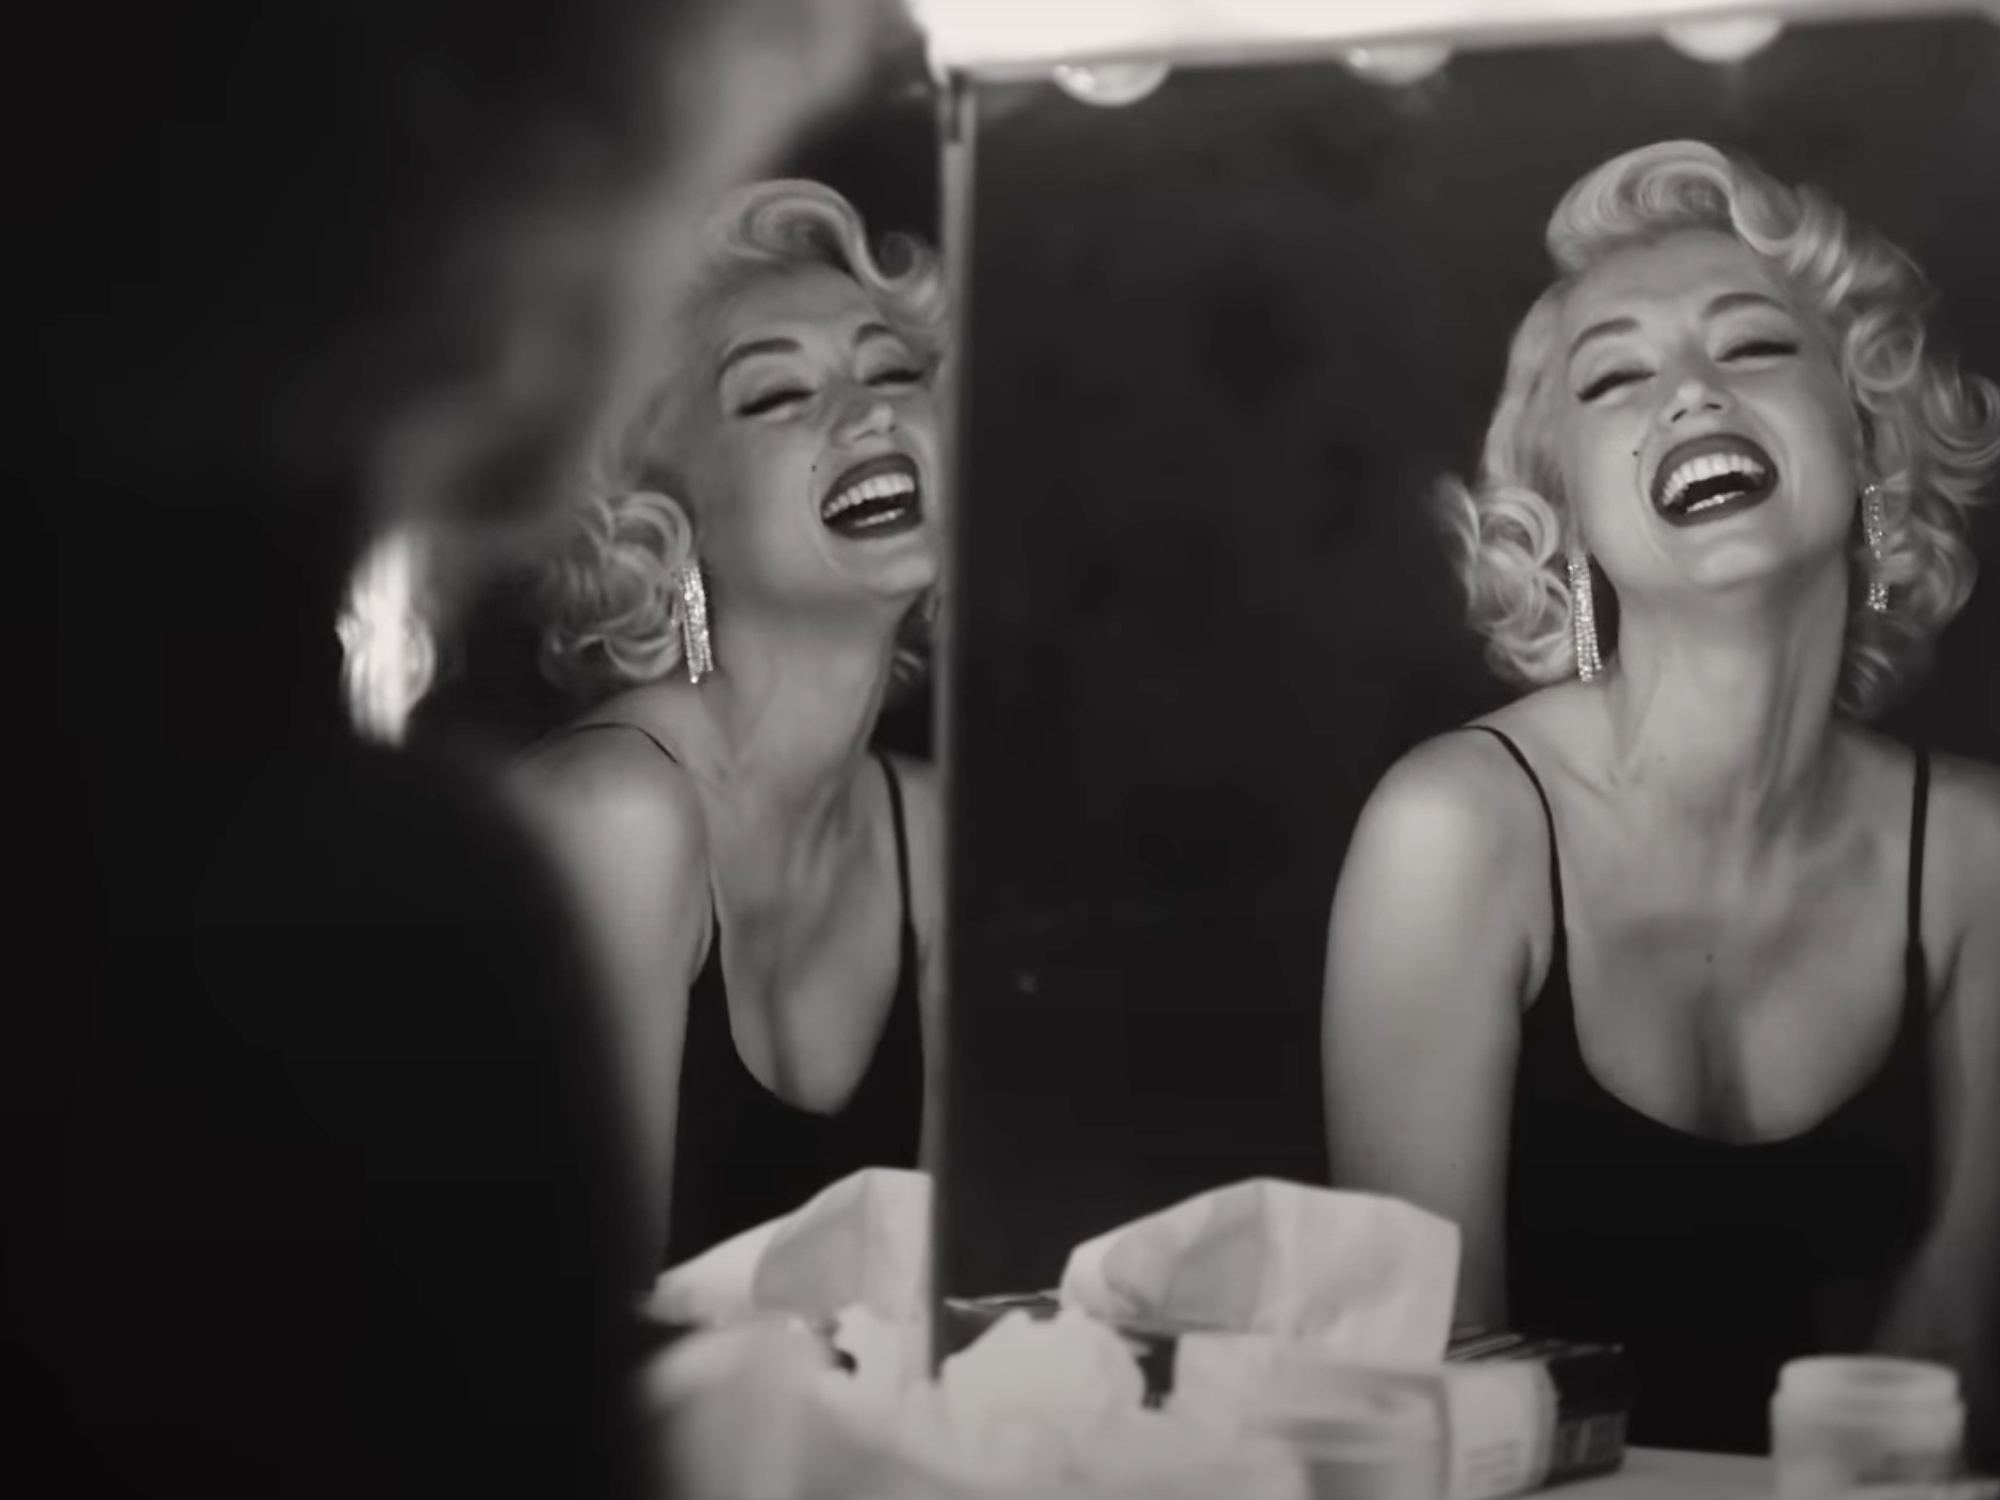 Fame devours Ana de Armas as Marilyn Monroe in the